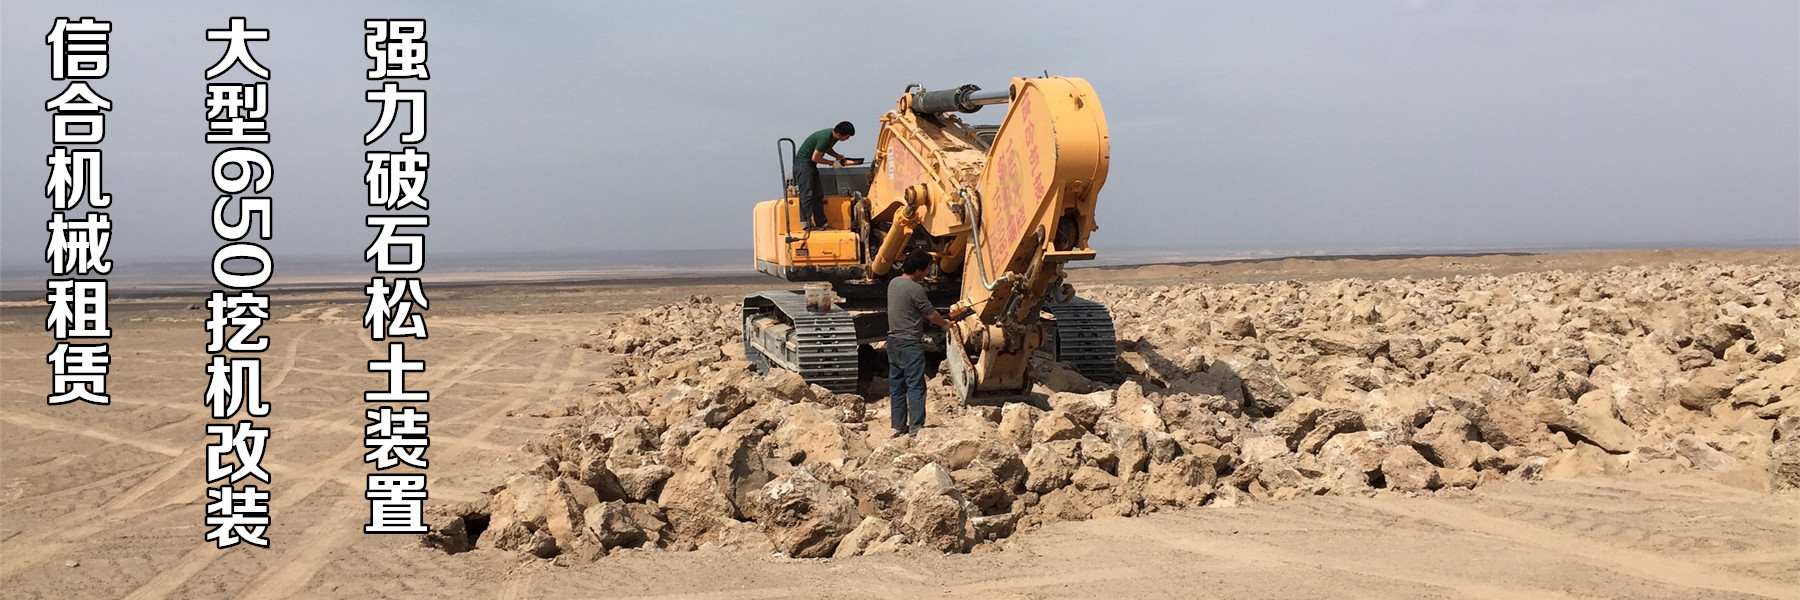 新疆矿山设备租赁的洗砂机在工业洗沙中效果怎么样